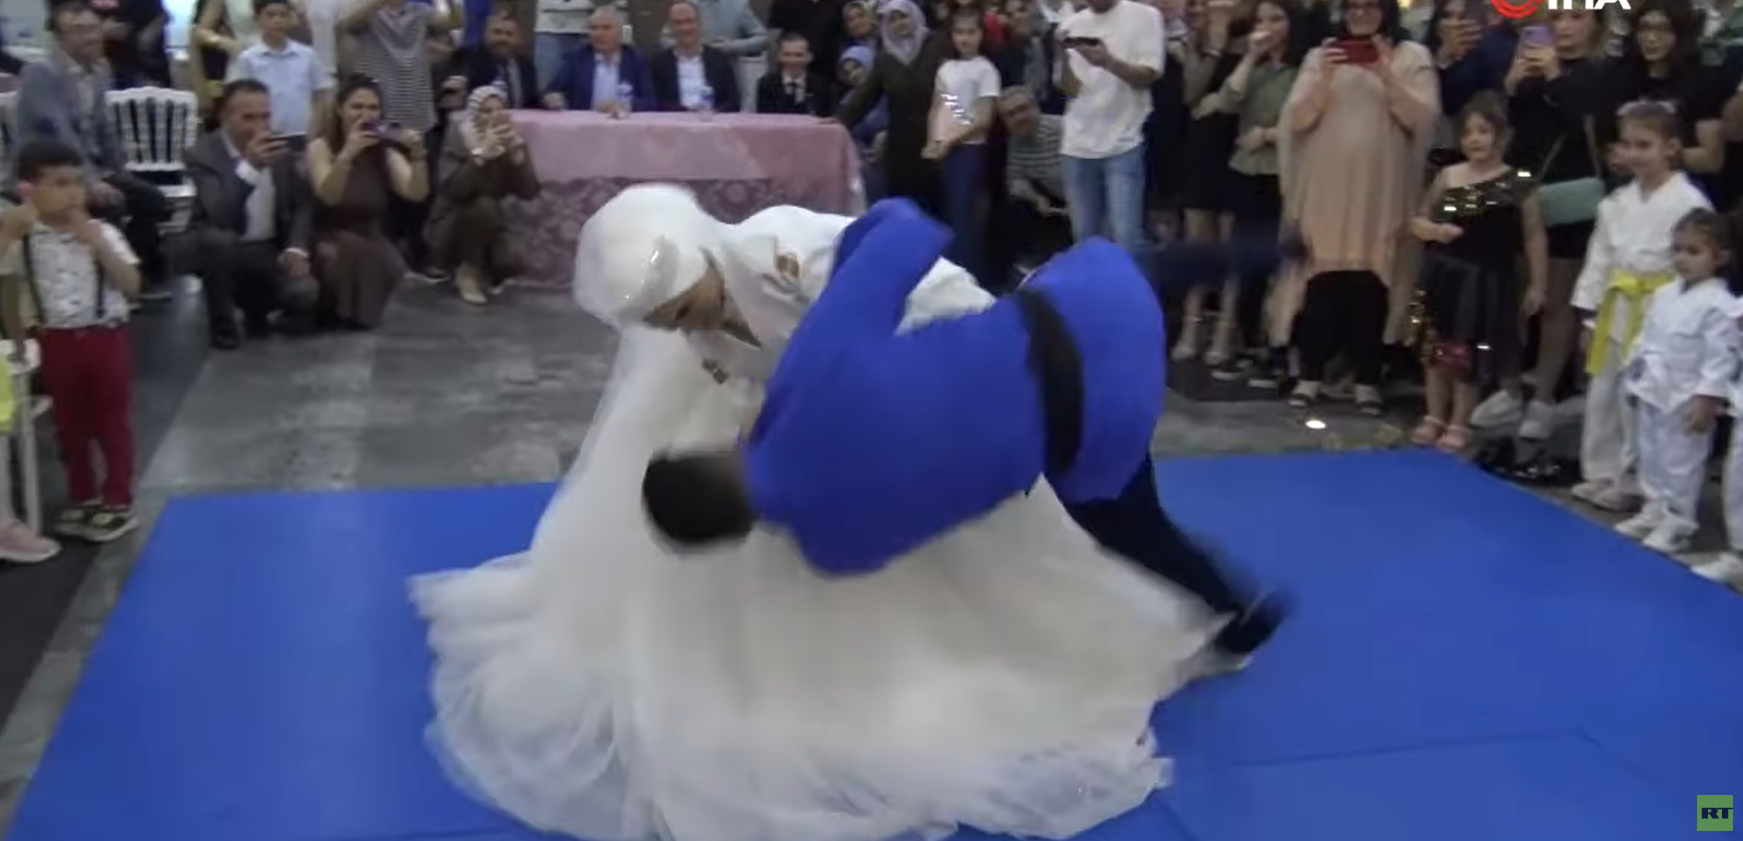 عروس تركية تطرح زوجها أرضا في حفل زفافهما! (فيديو)